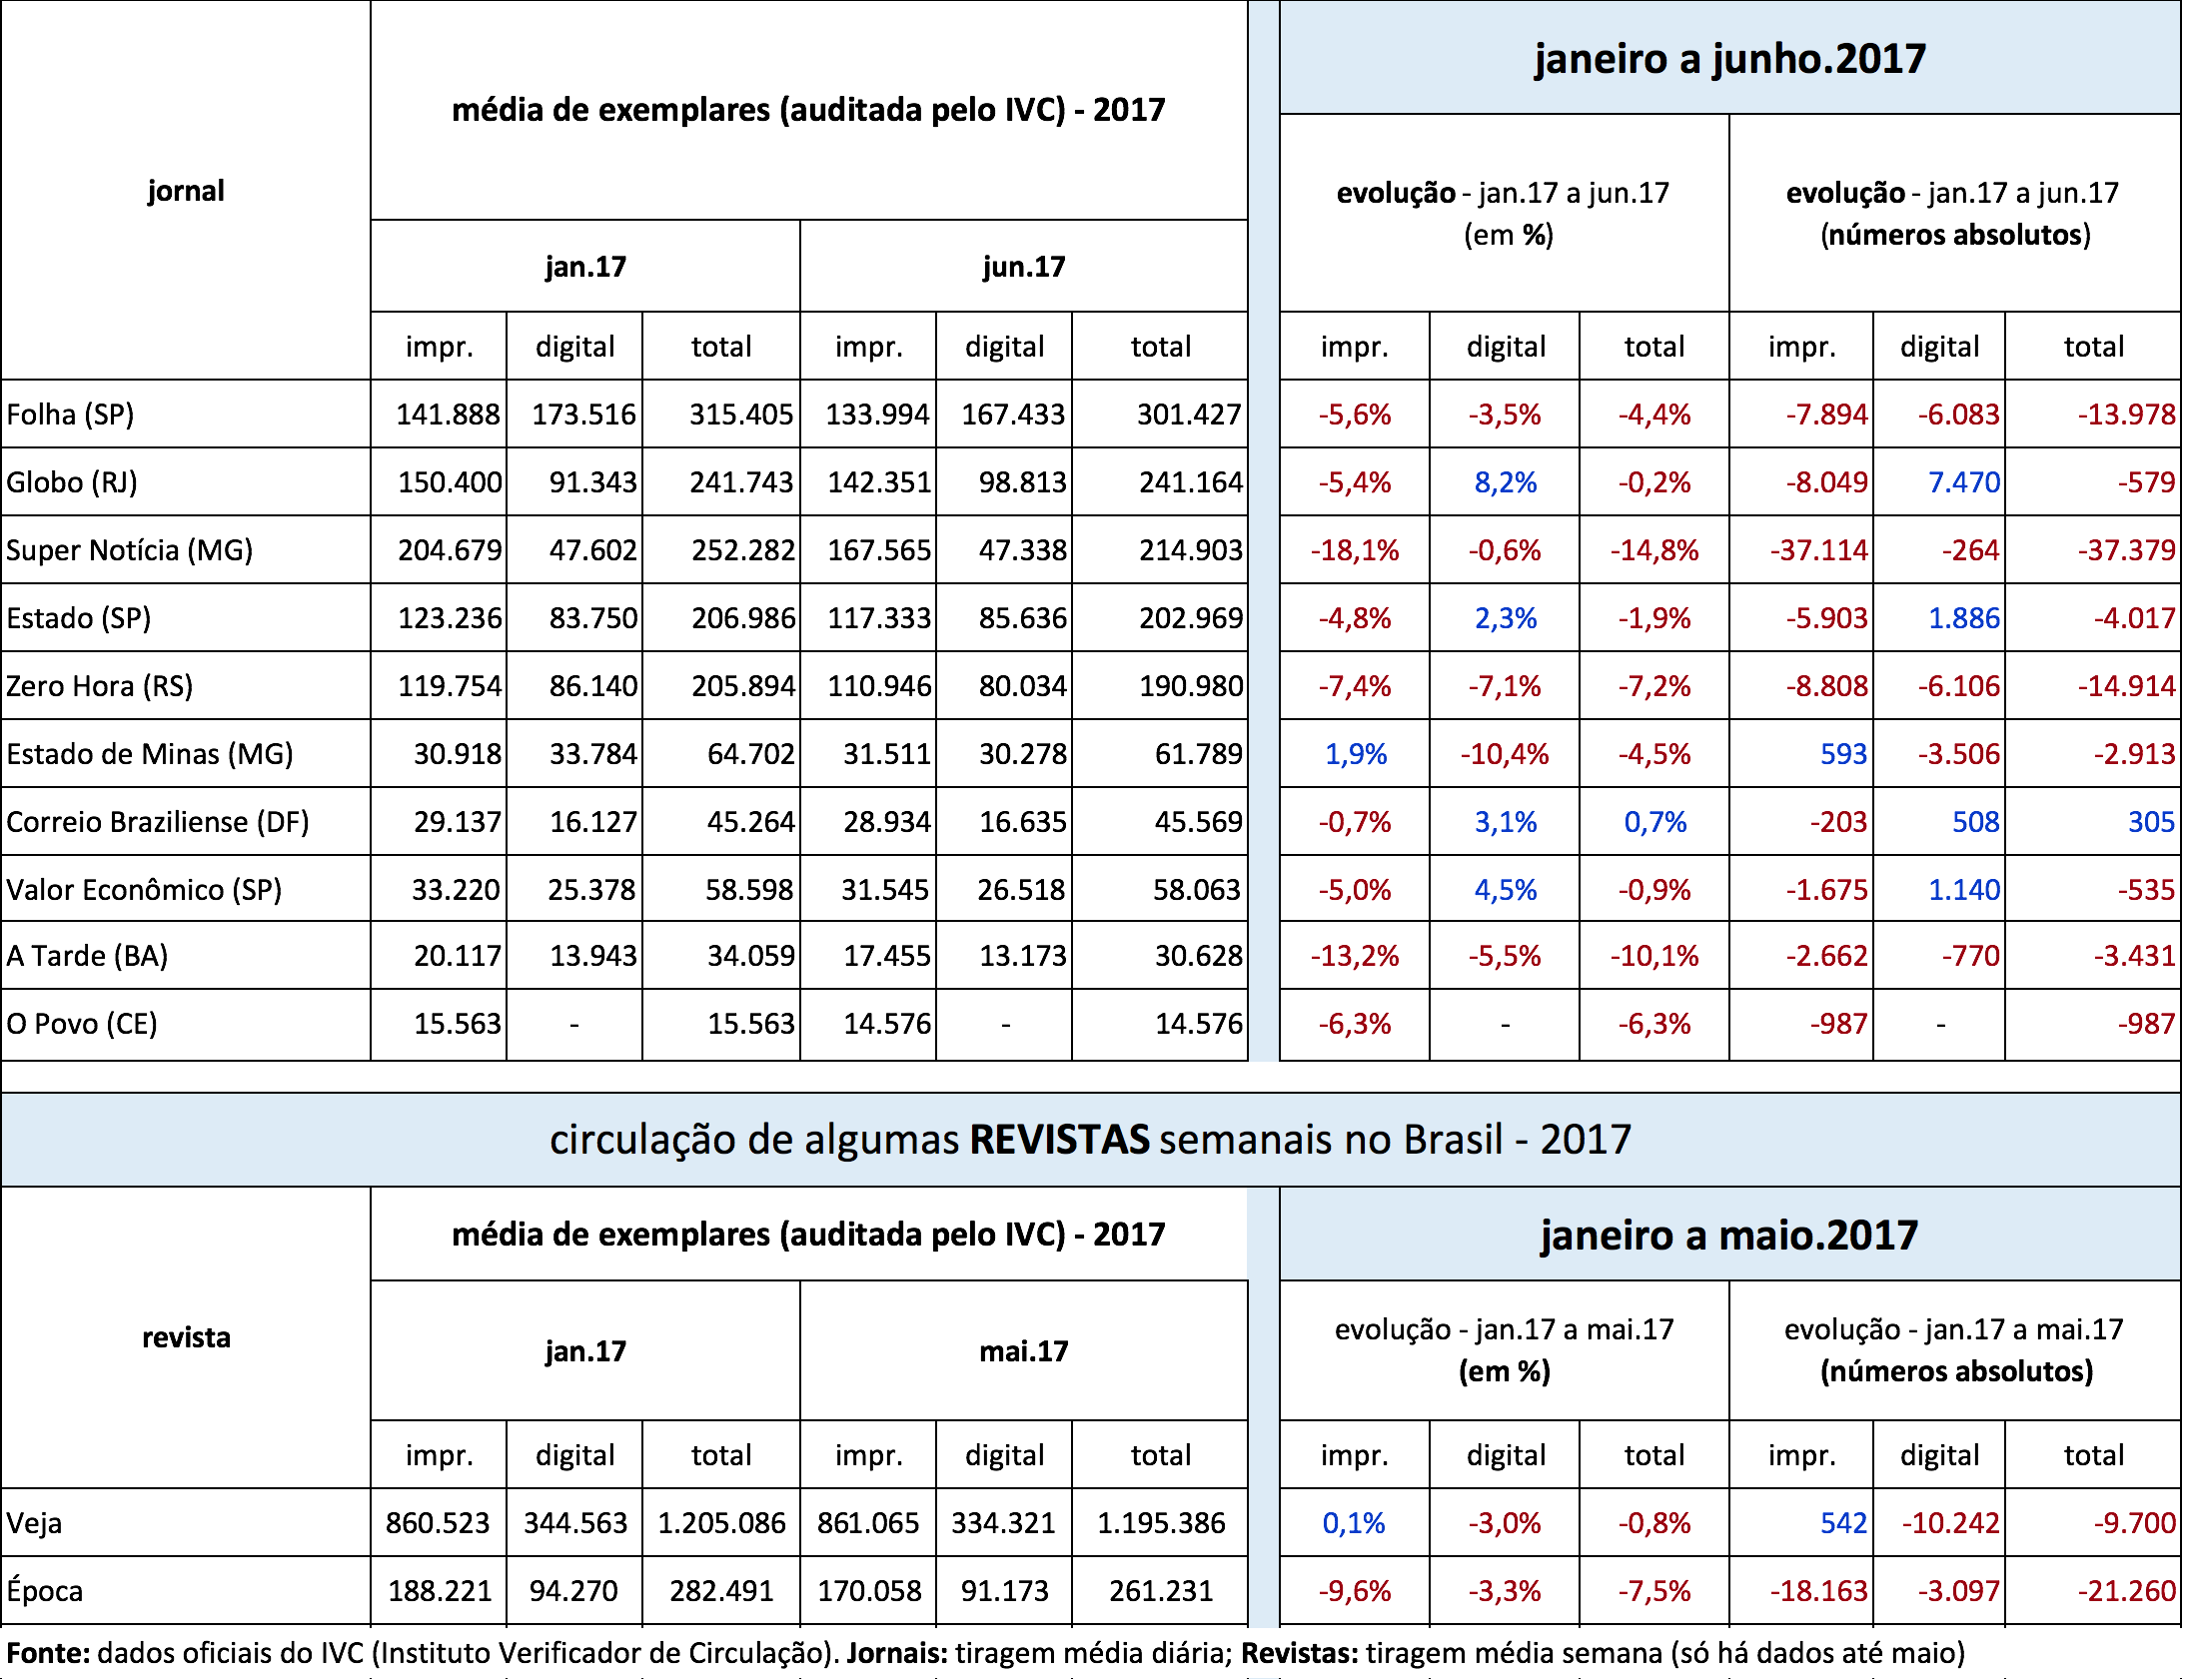 Dados de circulação da grande mídia brasileira no primeiro semestre de 2017